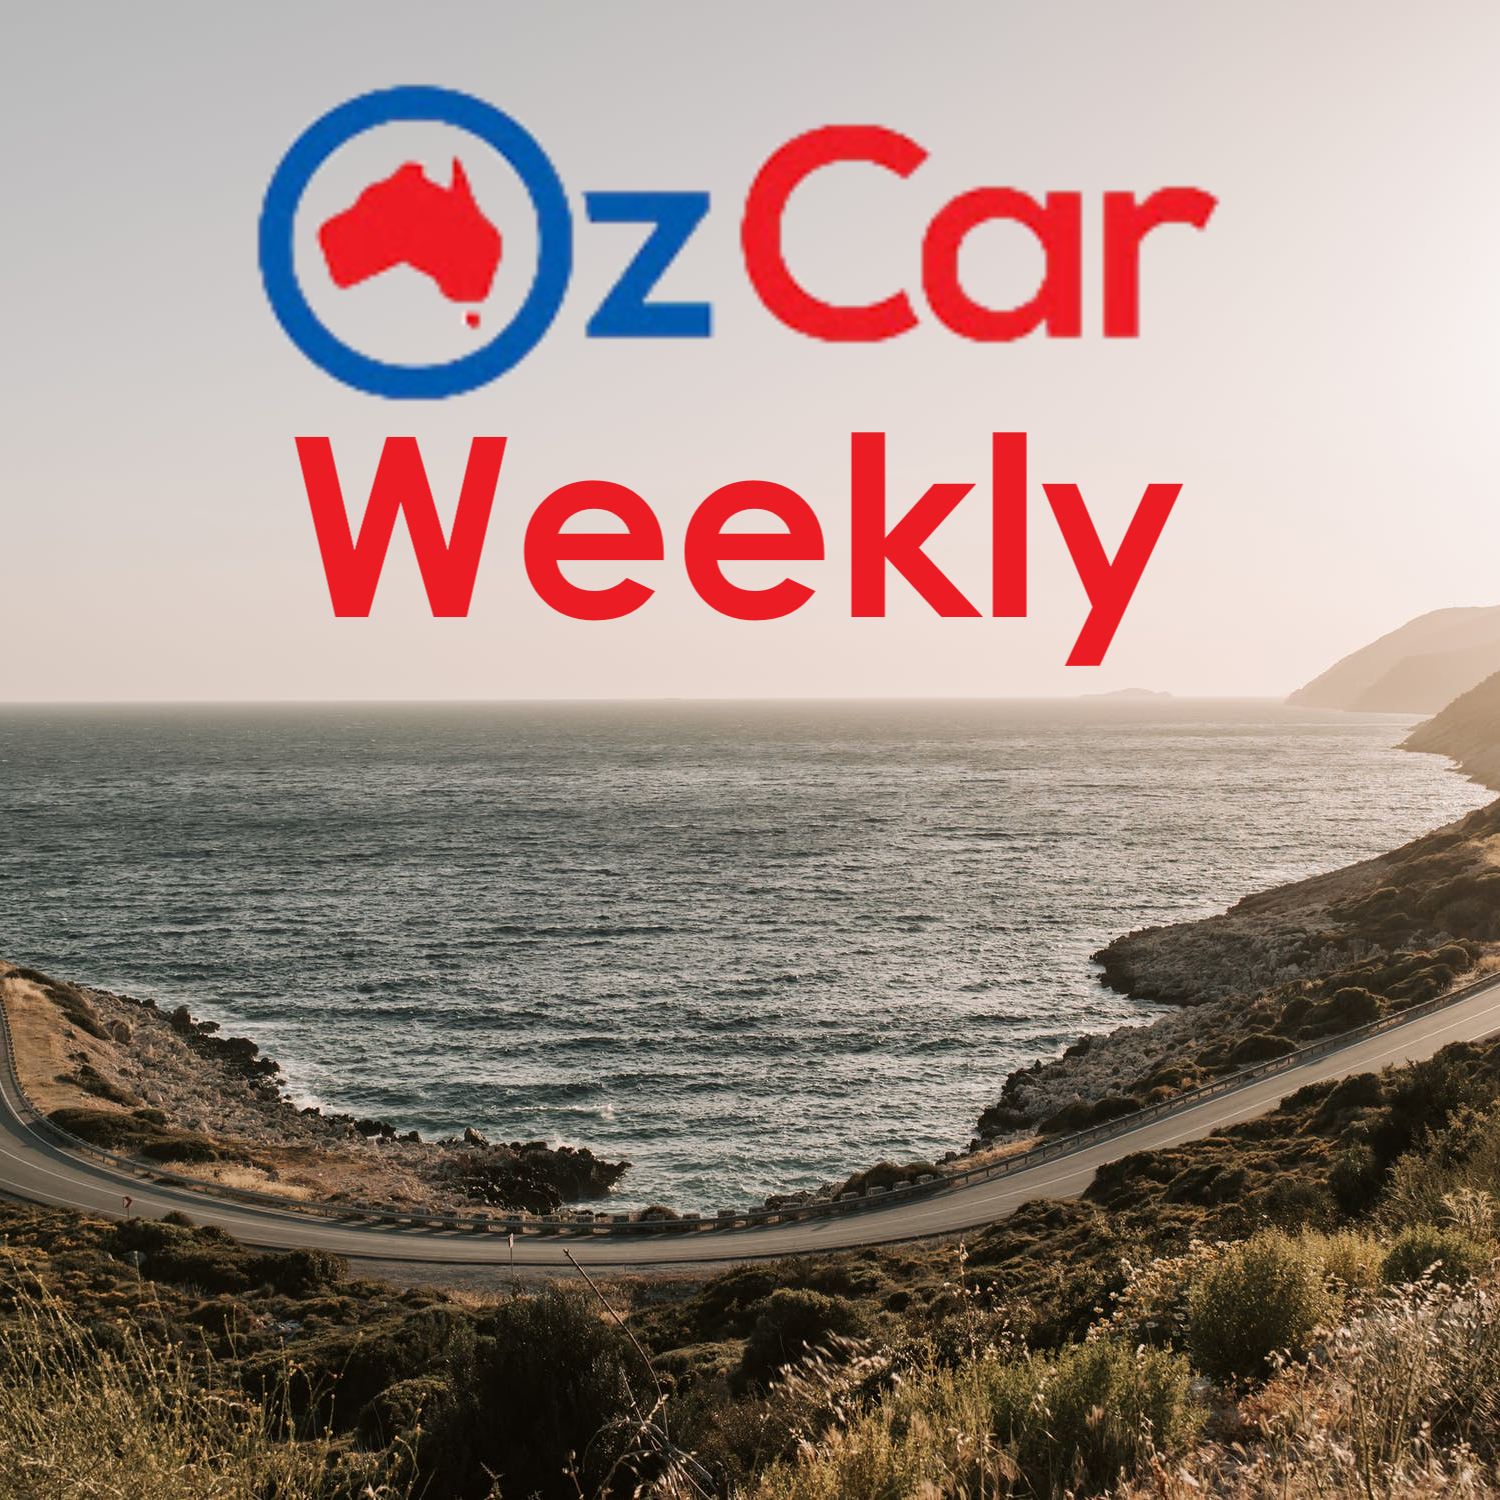 OzCar Weekly Episode 31